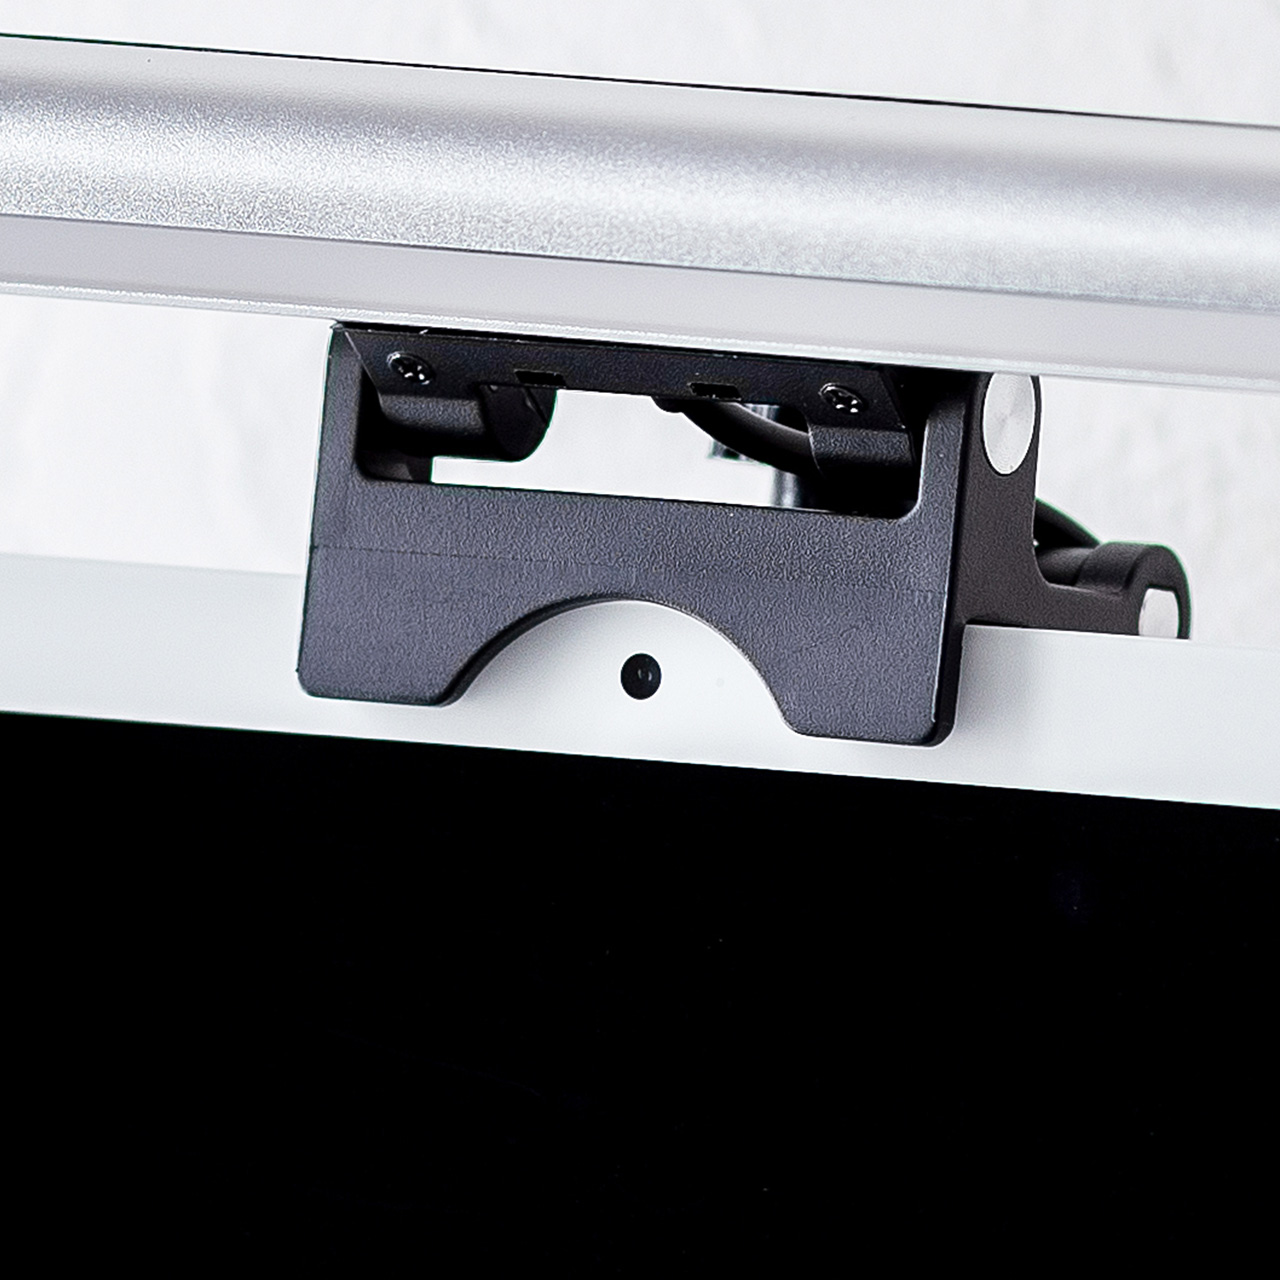 モニターライト スクリーンライト USBライト  無段階調光 調色可能 タッチ操作 最大60ルーメン 幅40cm 800-LED063